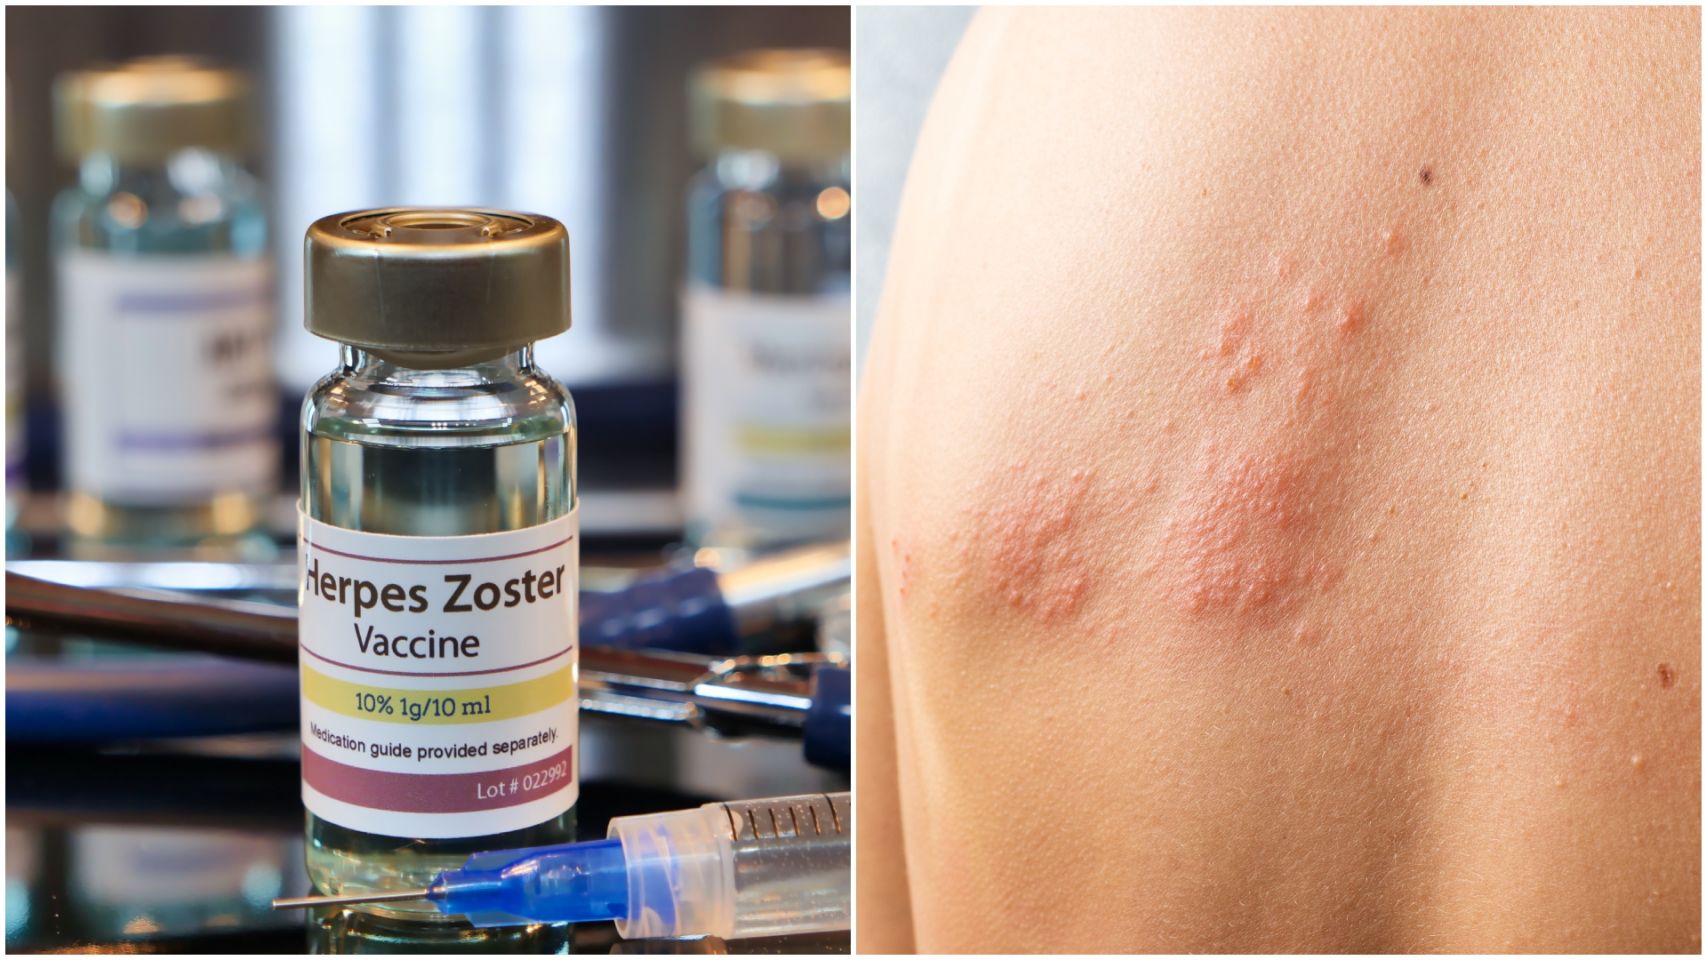 Los síntomas del herpes zóster son dolor y ampollas en la piel